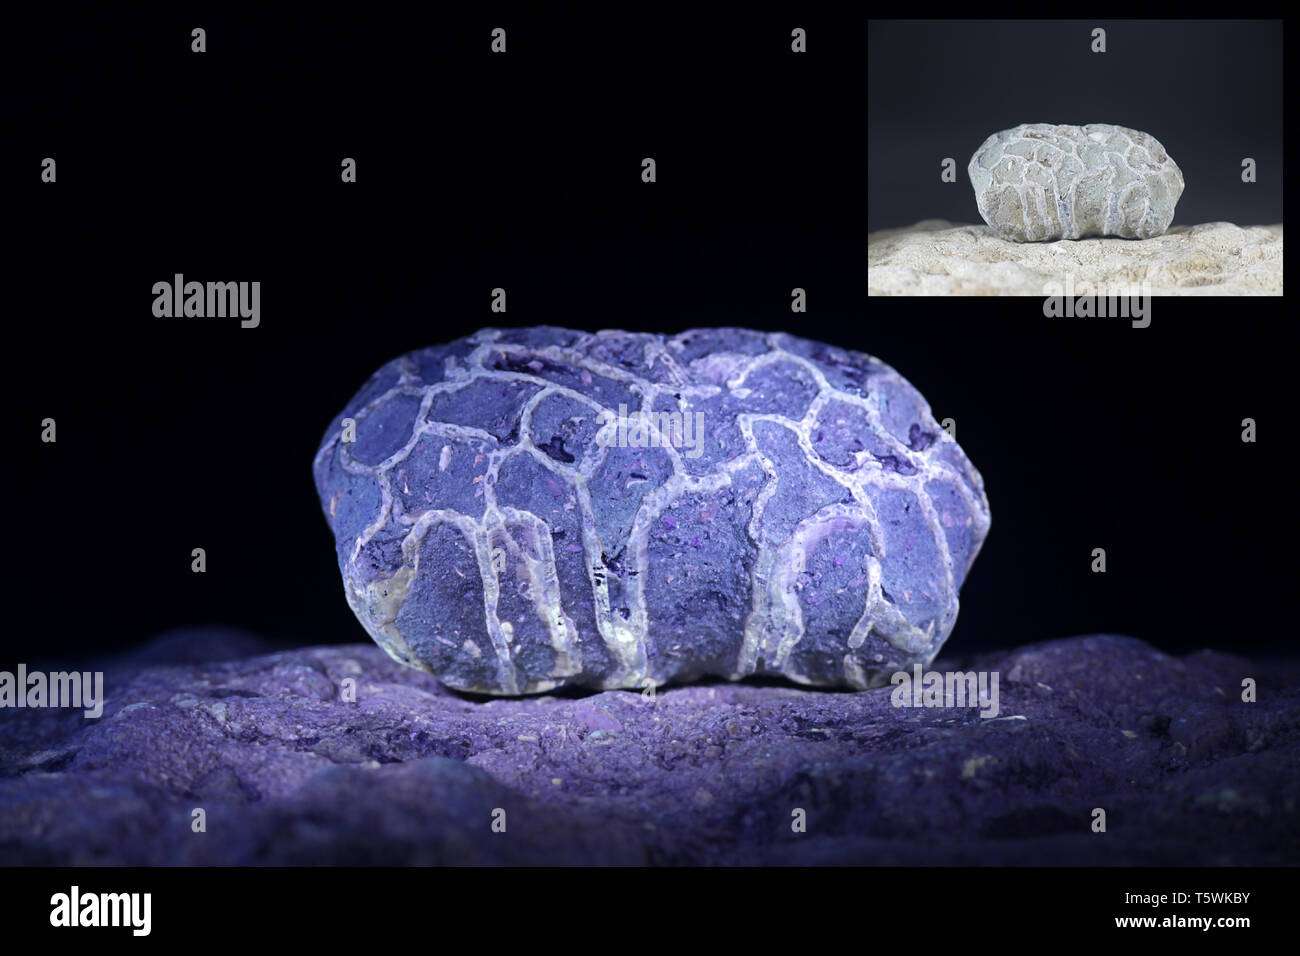 Les récifs siluriens fossile de Saarenmaa en Estonie photographié à la lumière ultraviolette (365 nm). Plus petite image montrant même échantillon dans la lumière du jour. Banque D'Images